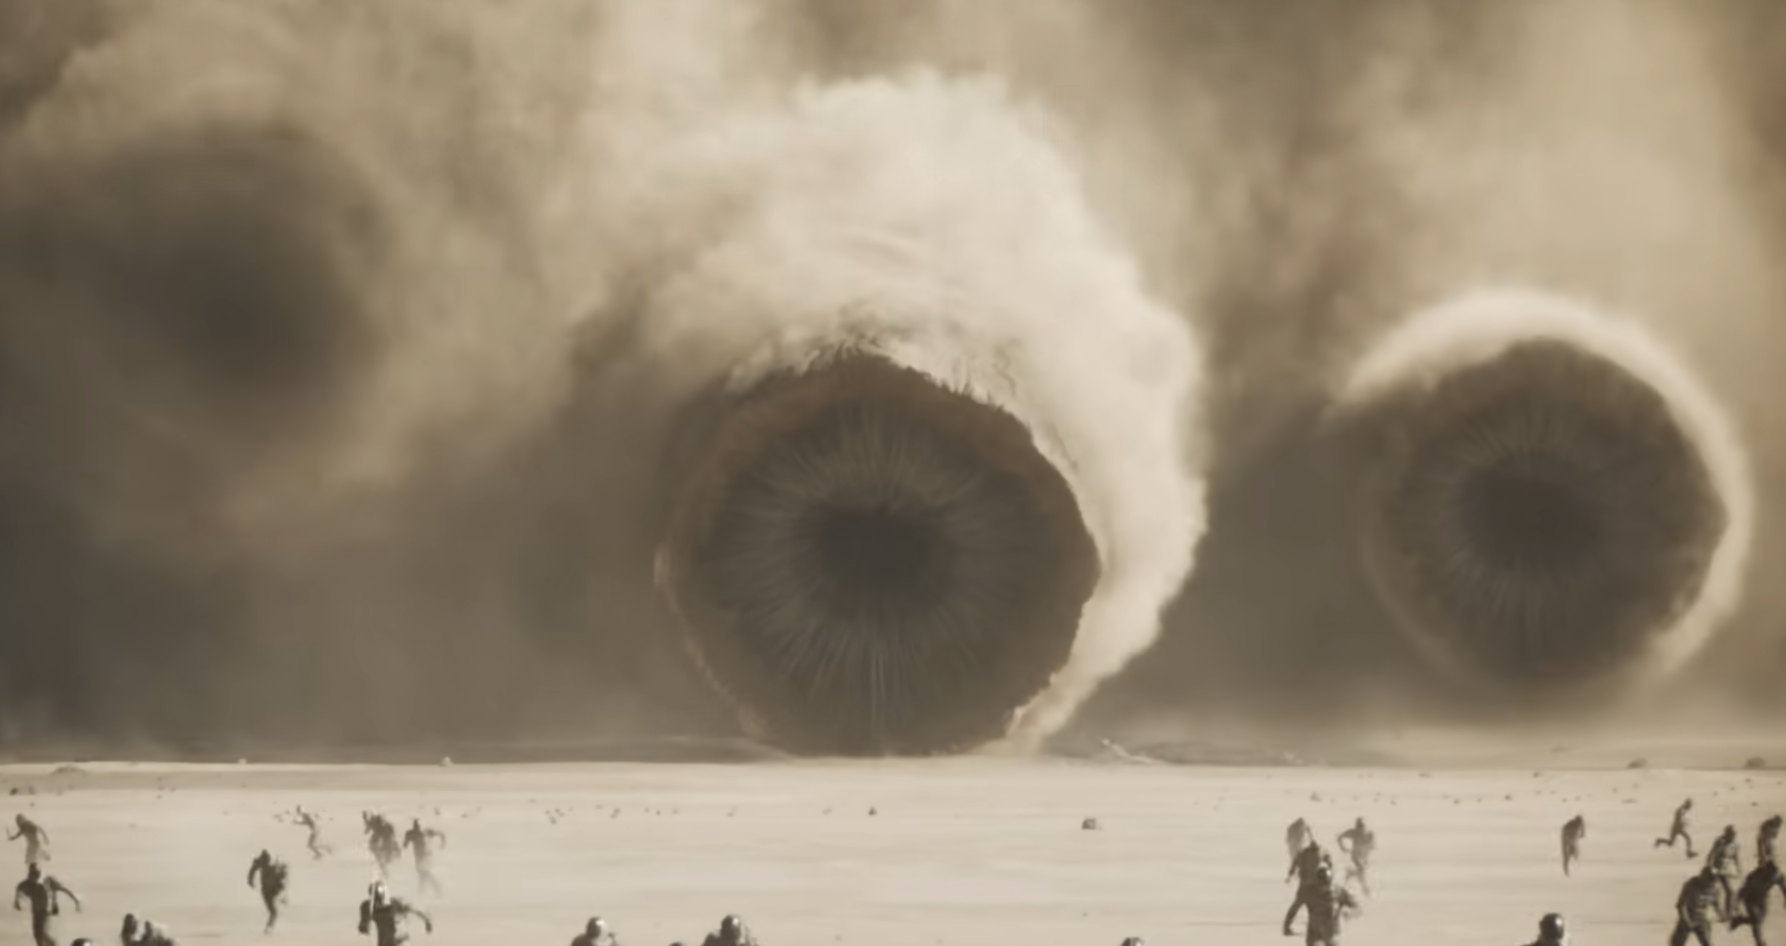 Personas huyendo de enormes estructuras con forma de ojos en un desierto, escena de ciencia ficción